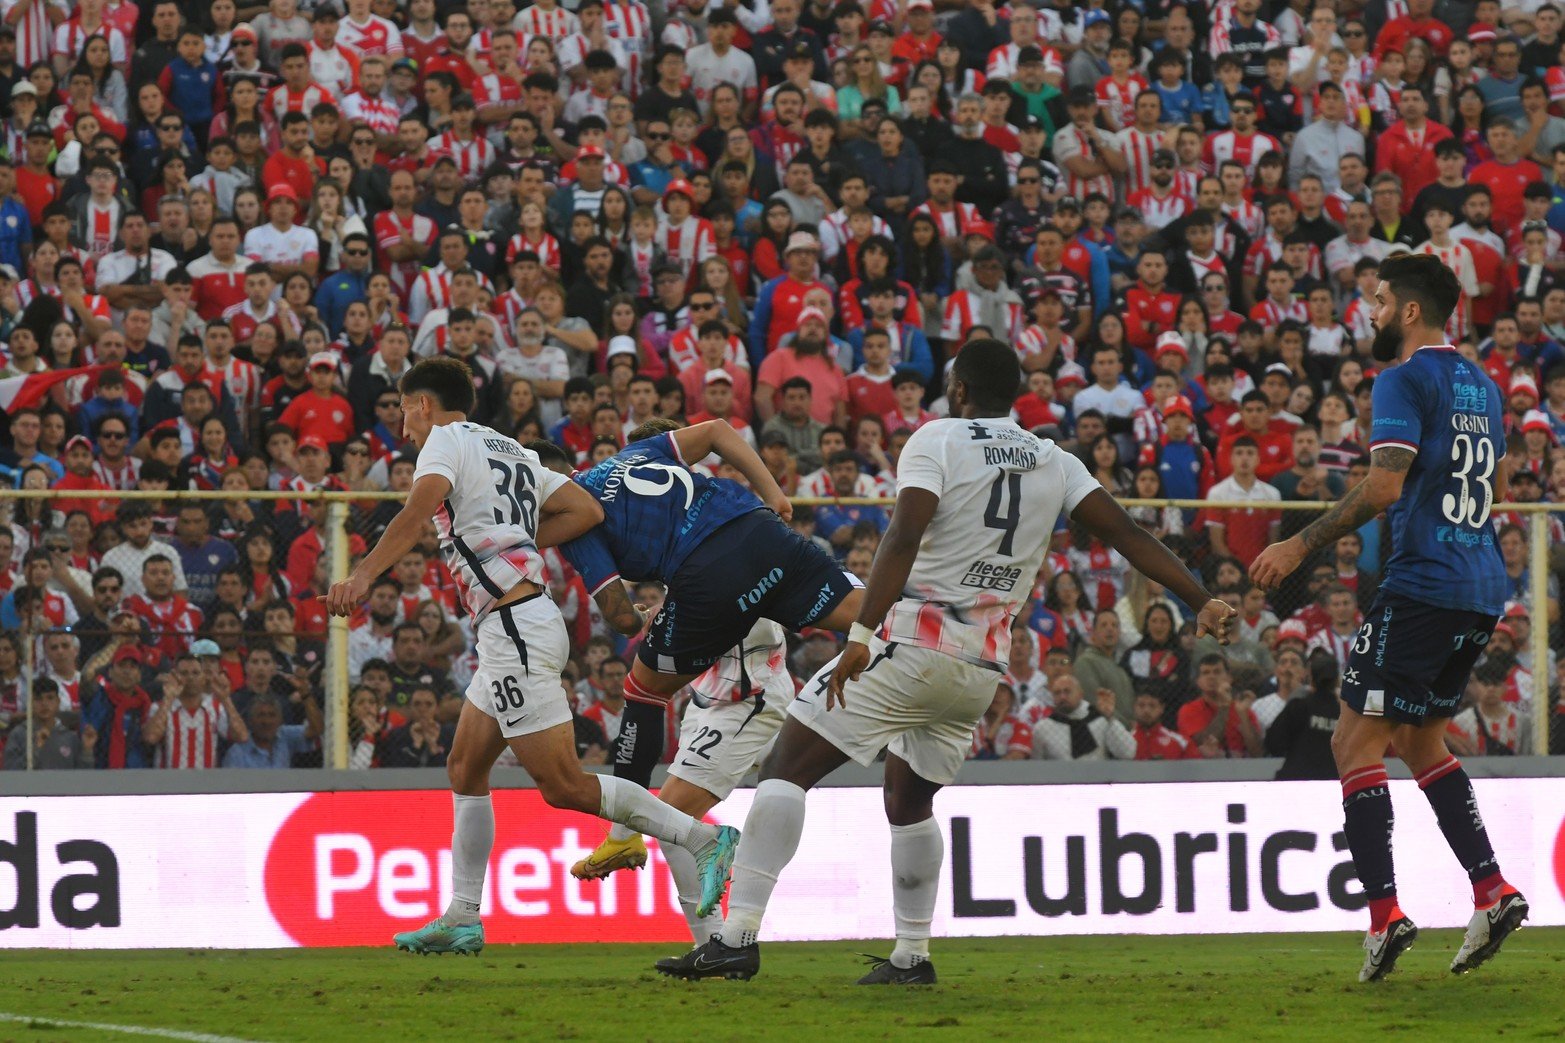 La pelota ya partió. El cabezazo del González  "Toro" Morales va directo al arco. El gol fue anulado. Unión le ganó 2 a 1 a San Lorenzo y se mantiene en la punta del torneo disputadas cinco fechas.